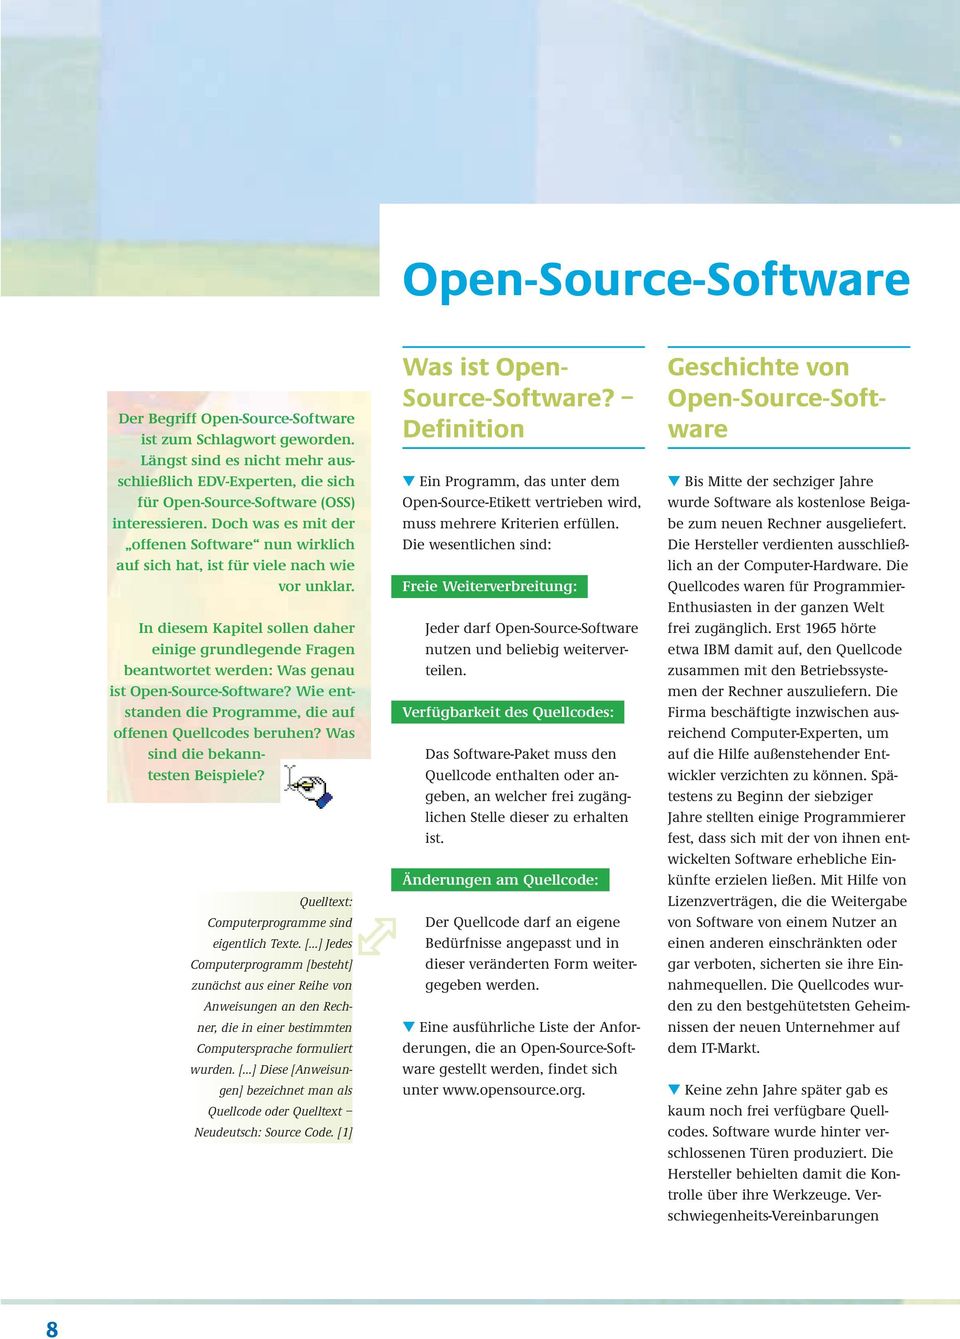 In diesem Kapitel sollen daher einige grundlegende Fragen beantwortet werden: Was genau ist Open-Source-Software? Wie entstanden die Programme, die auf offenen Quellcodes beruhen?